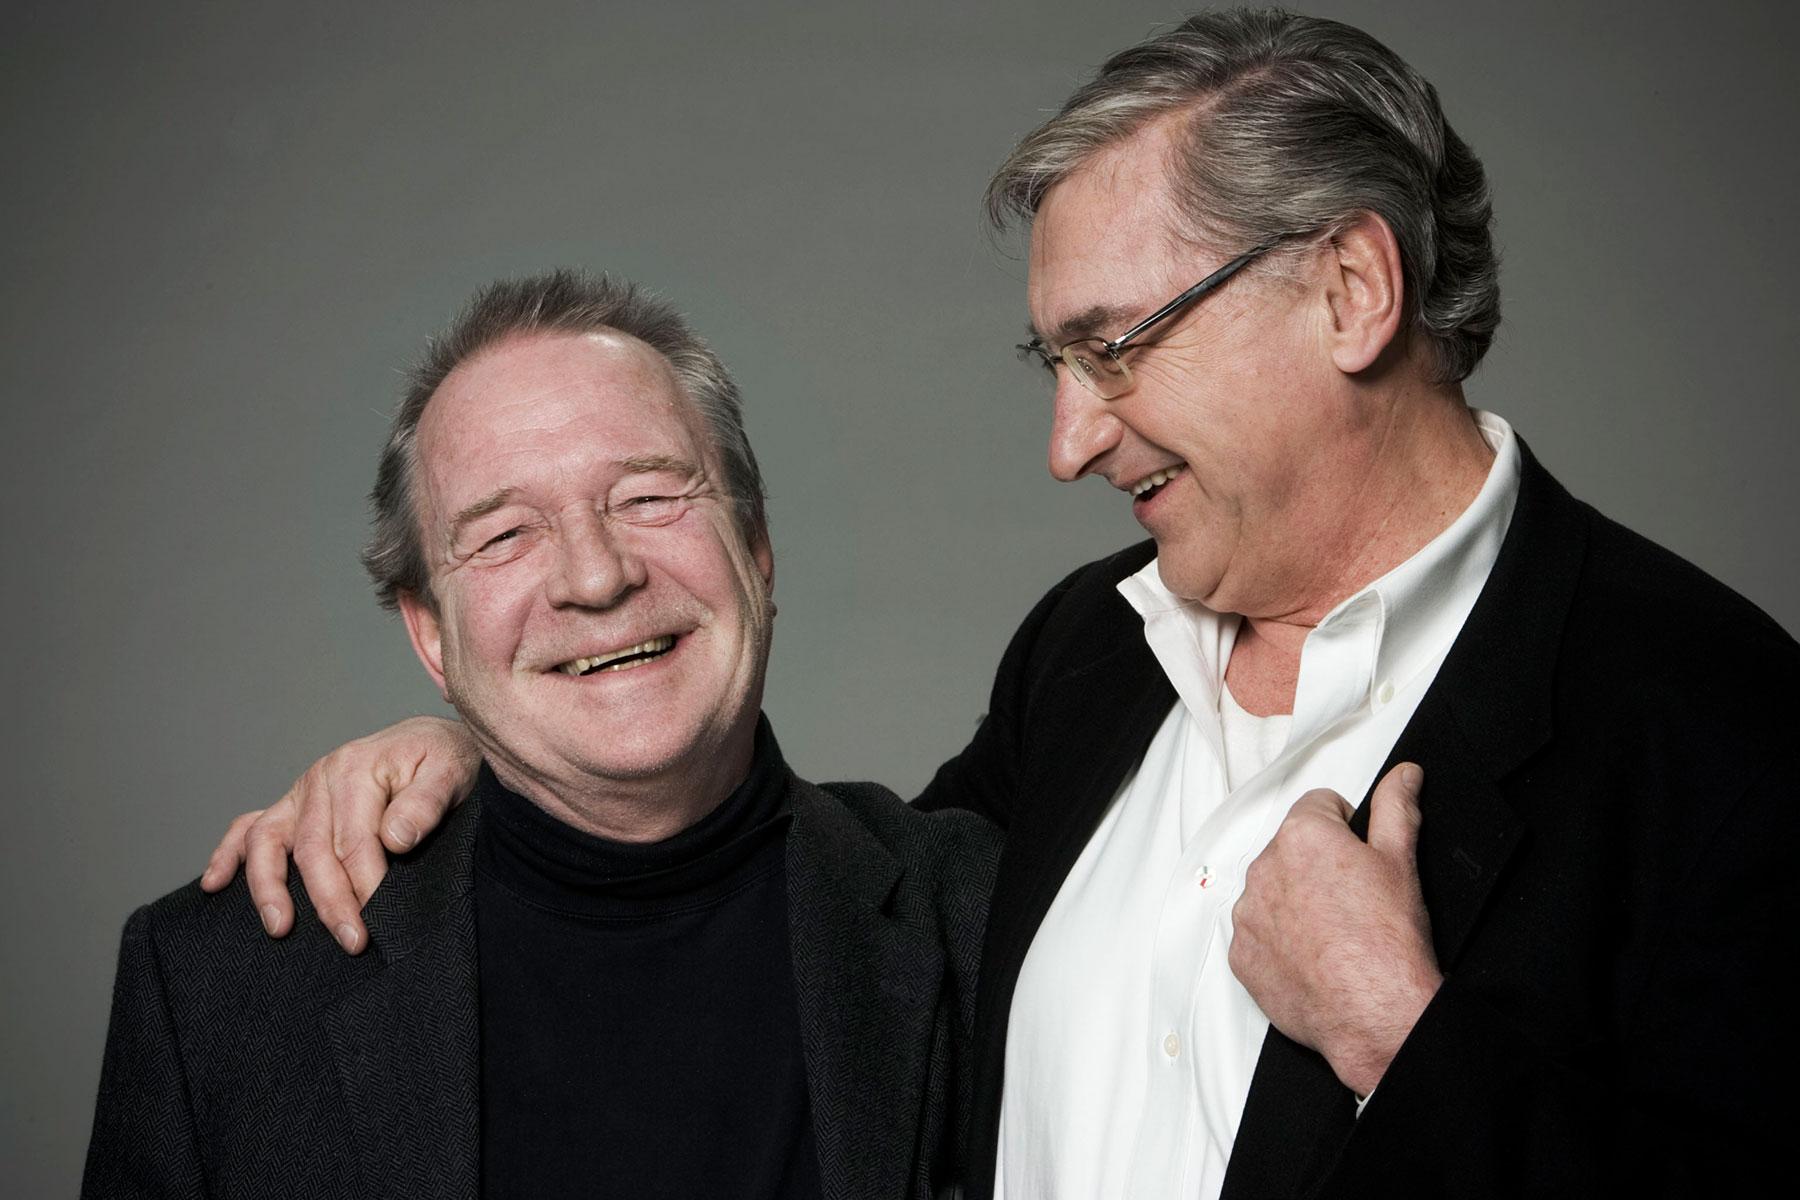 Parhästarna Magnus och Brasse spelade ihop i pjäsen ”Muntergökarna” 2005.